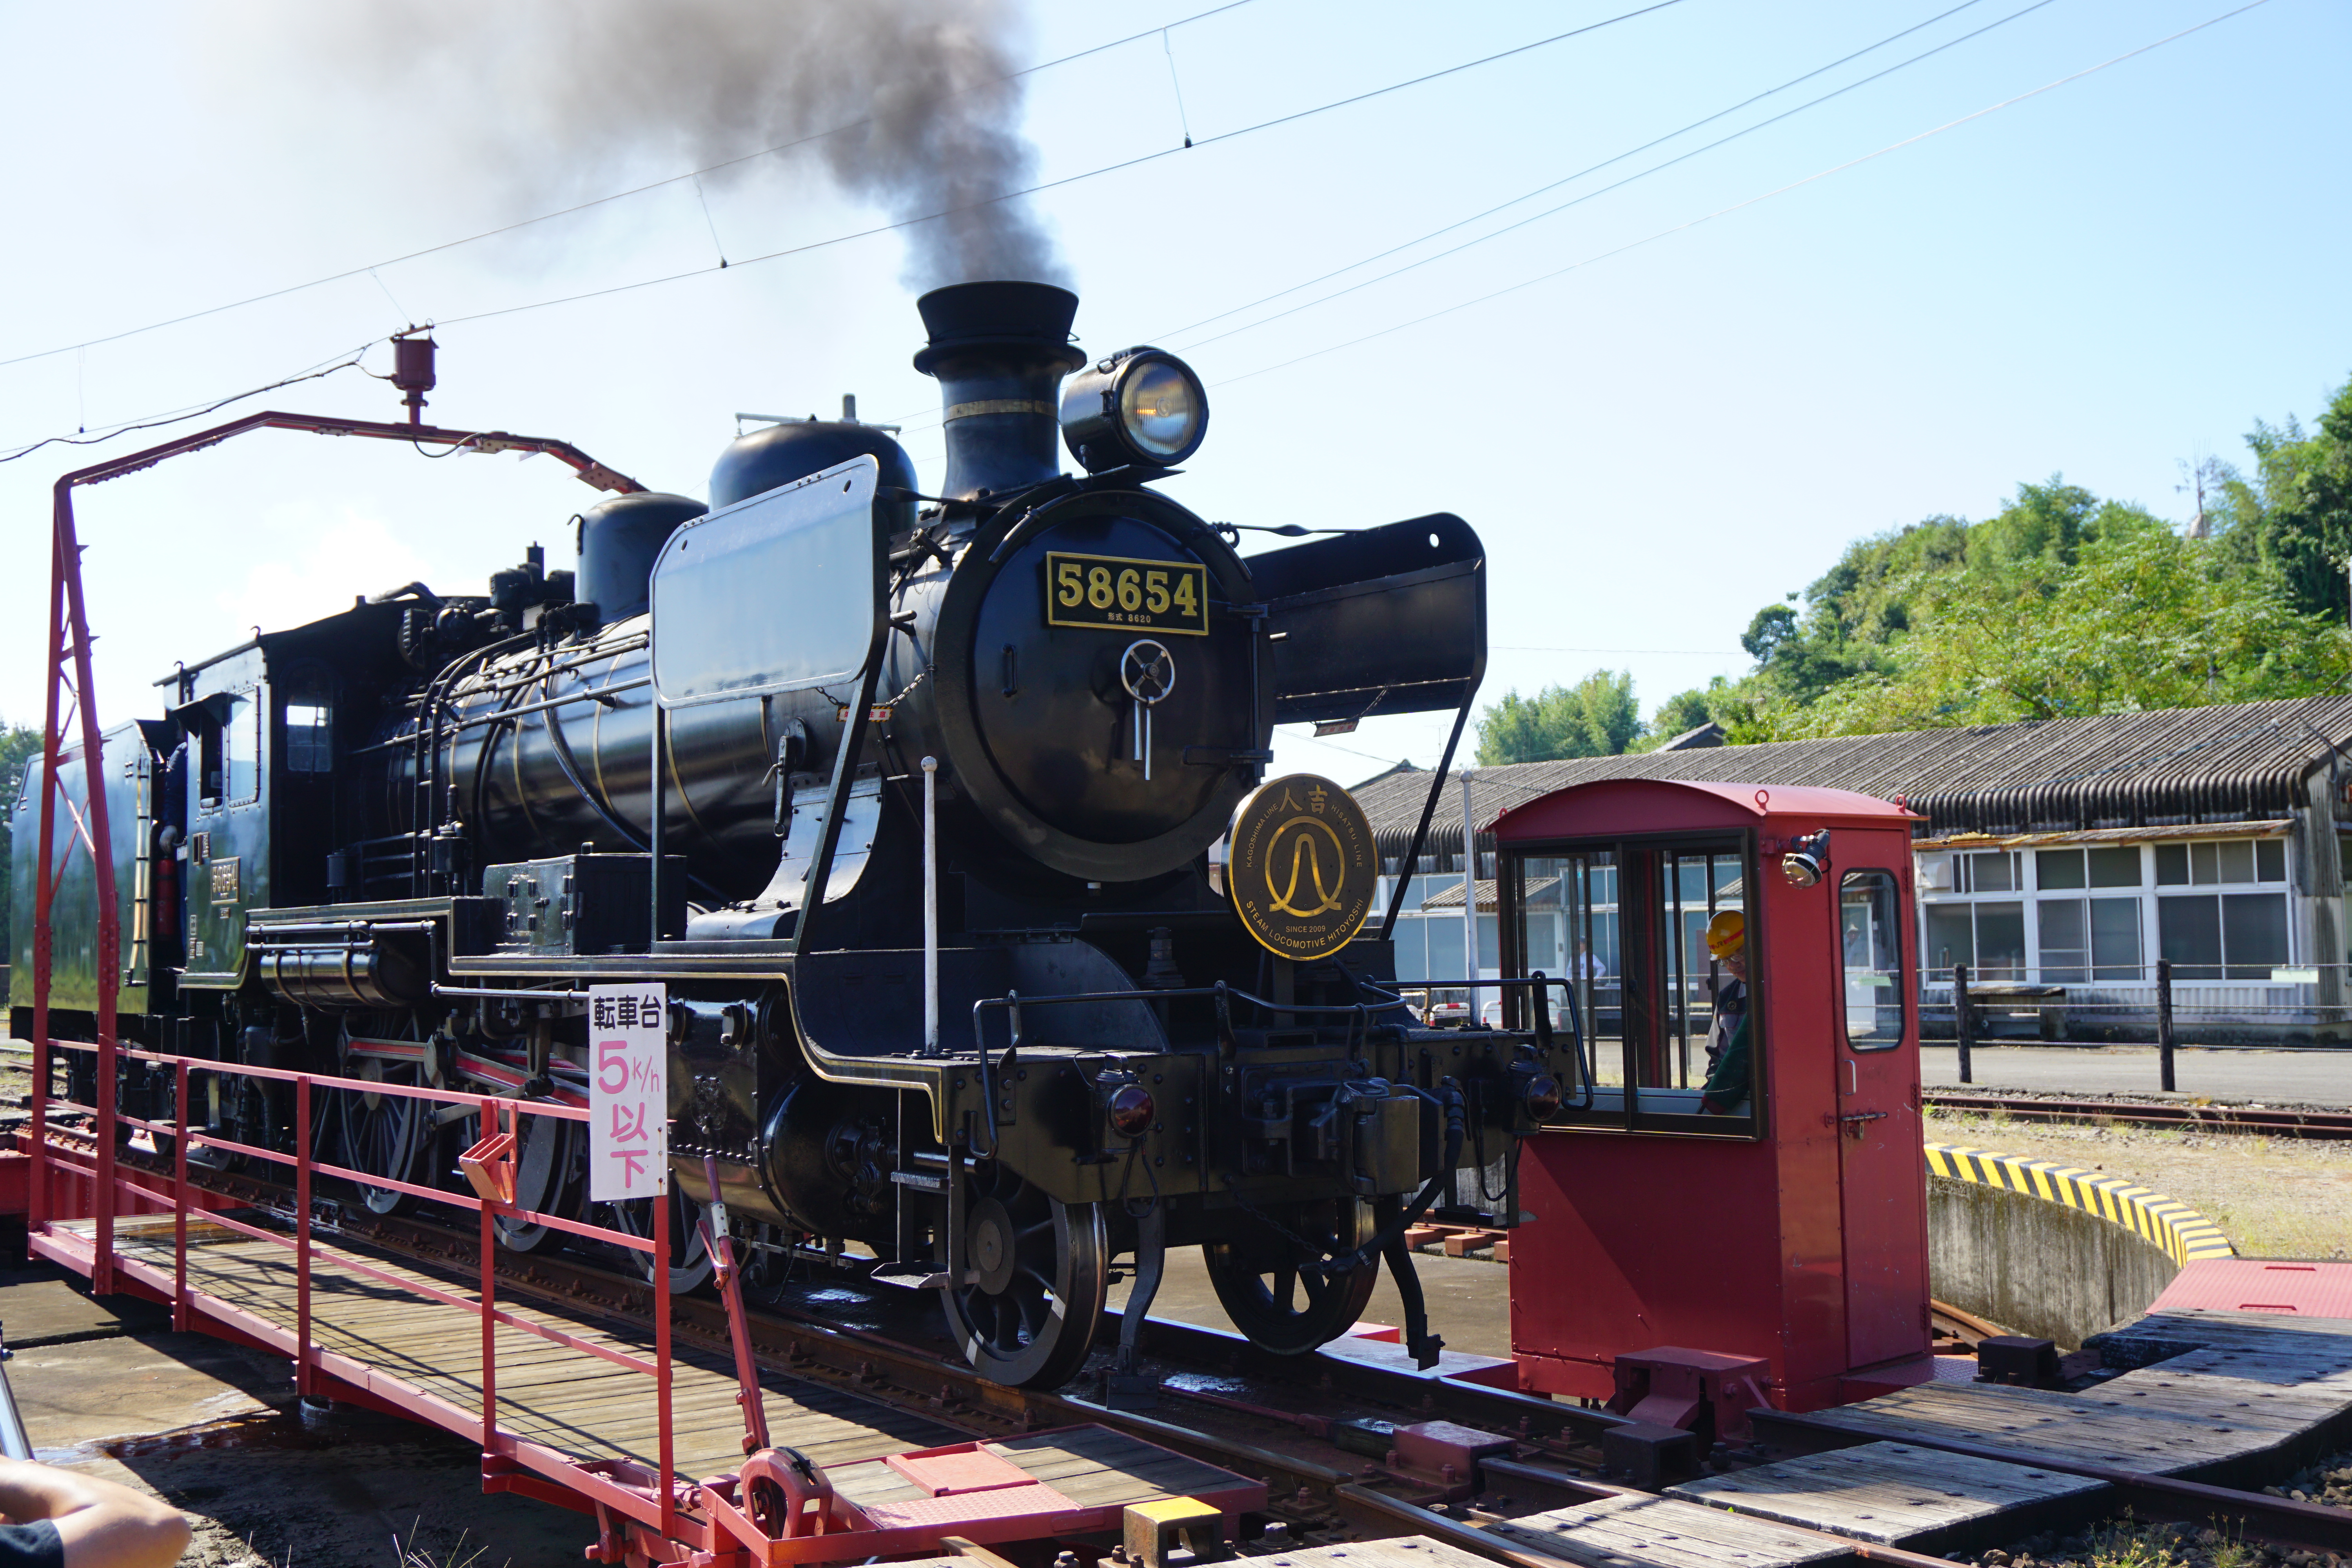 【SL人吉】人吉駅で日本最古の蒸気機関車の転換ショーを間近で体験【入場無料】